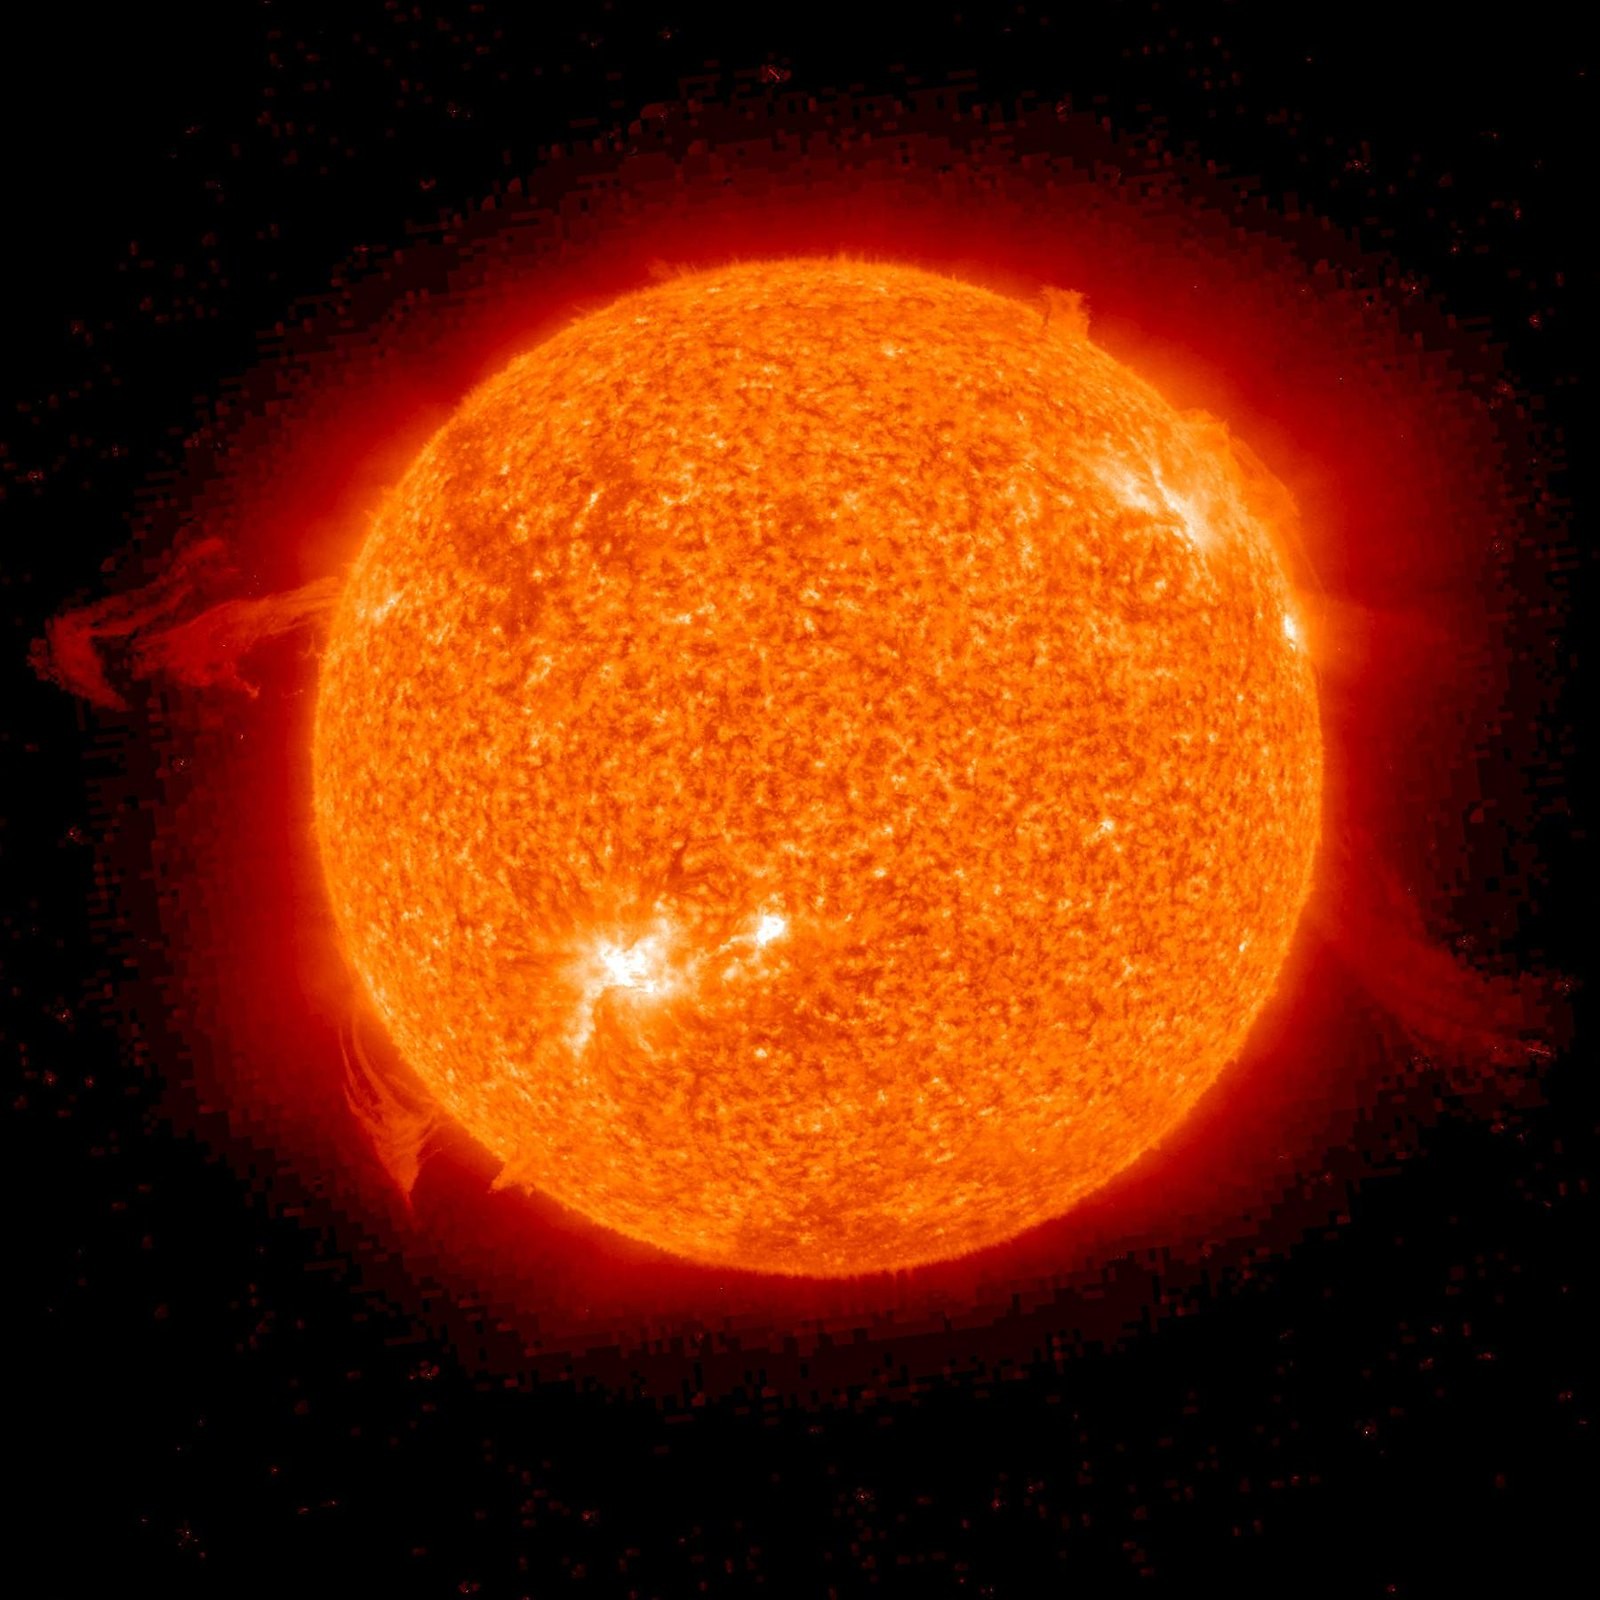 Zagadkowa struktura na powierzchni Słońca. Jest tak ogromna, że można dostrzec ją gołym okiem